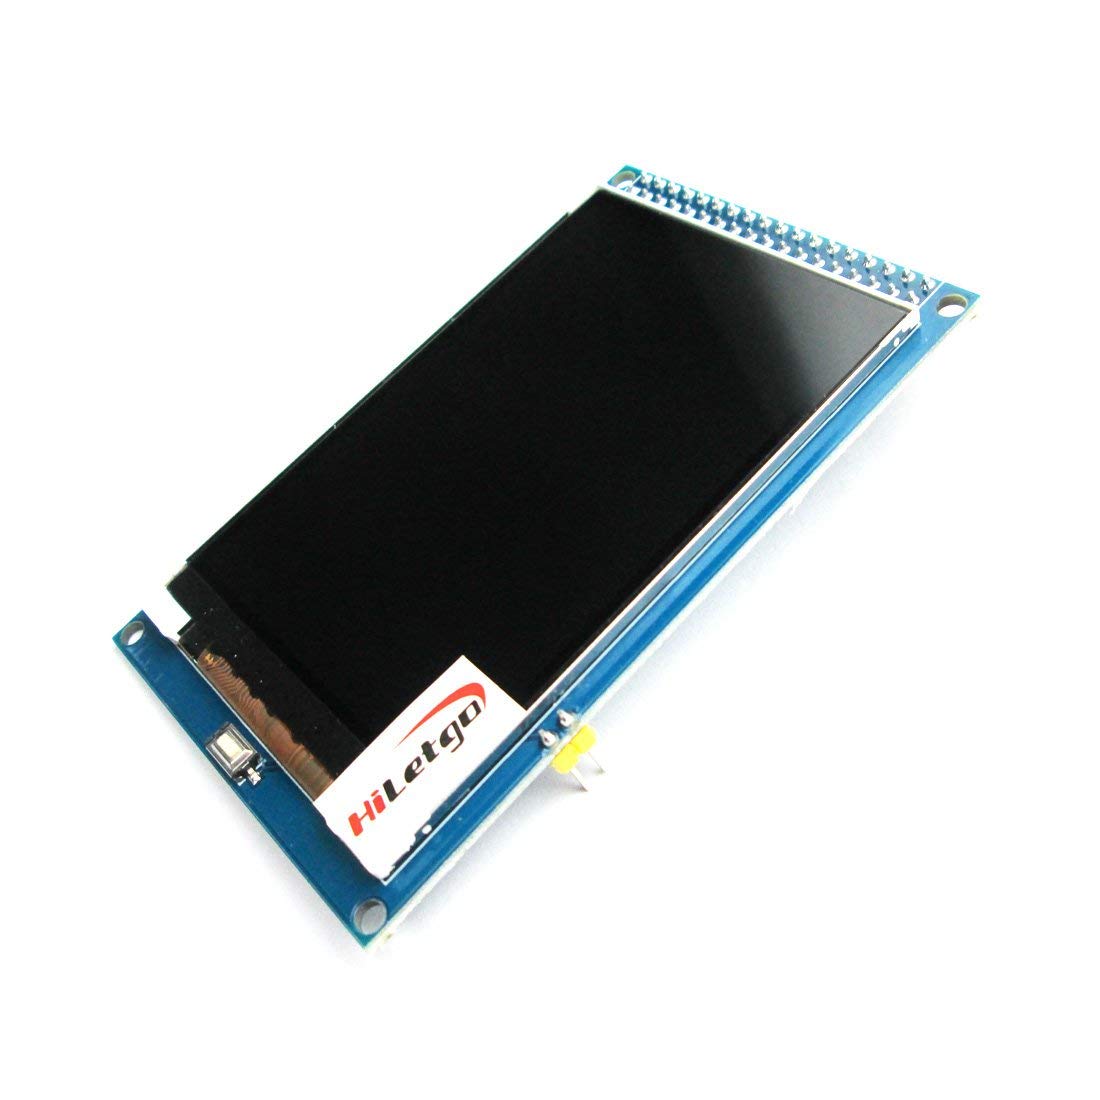 Hailege 3.5 inch IPS TFT LCD Display ILI9486/ILI9488 480x320 36 Pins for Arduino Mega2560 